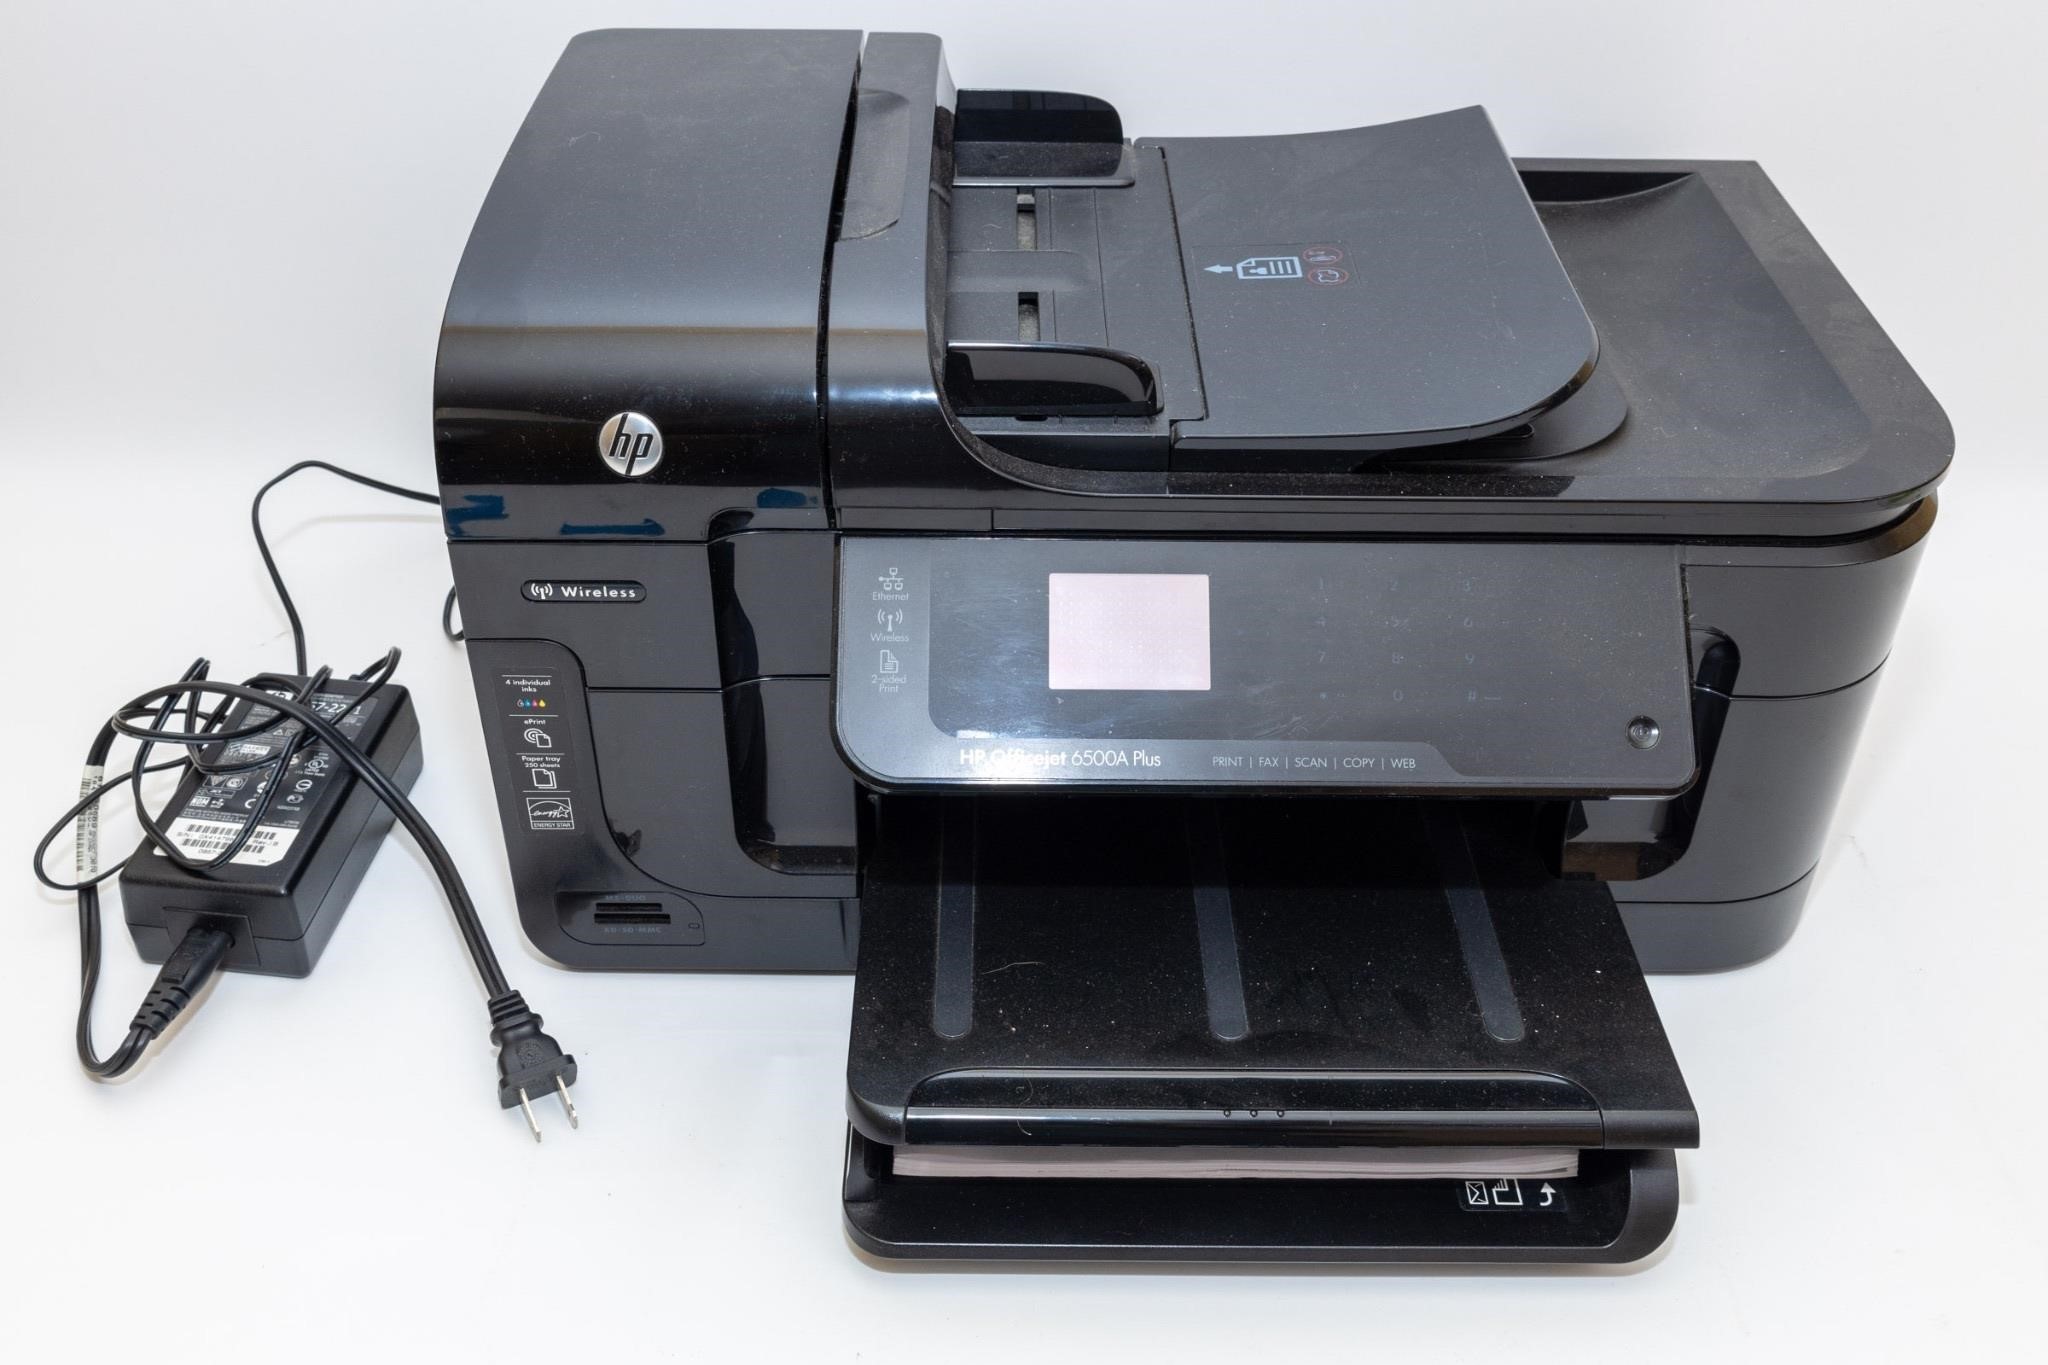 OfficeJet 6500A Plus Printer